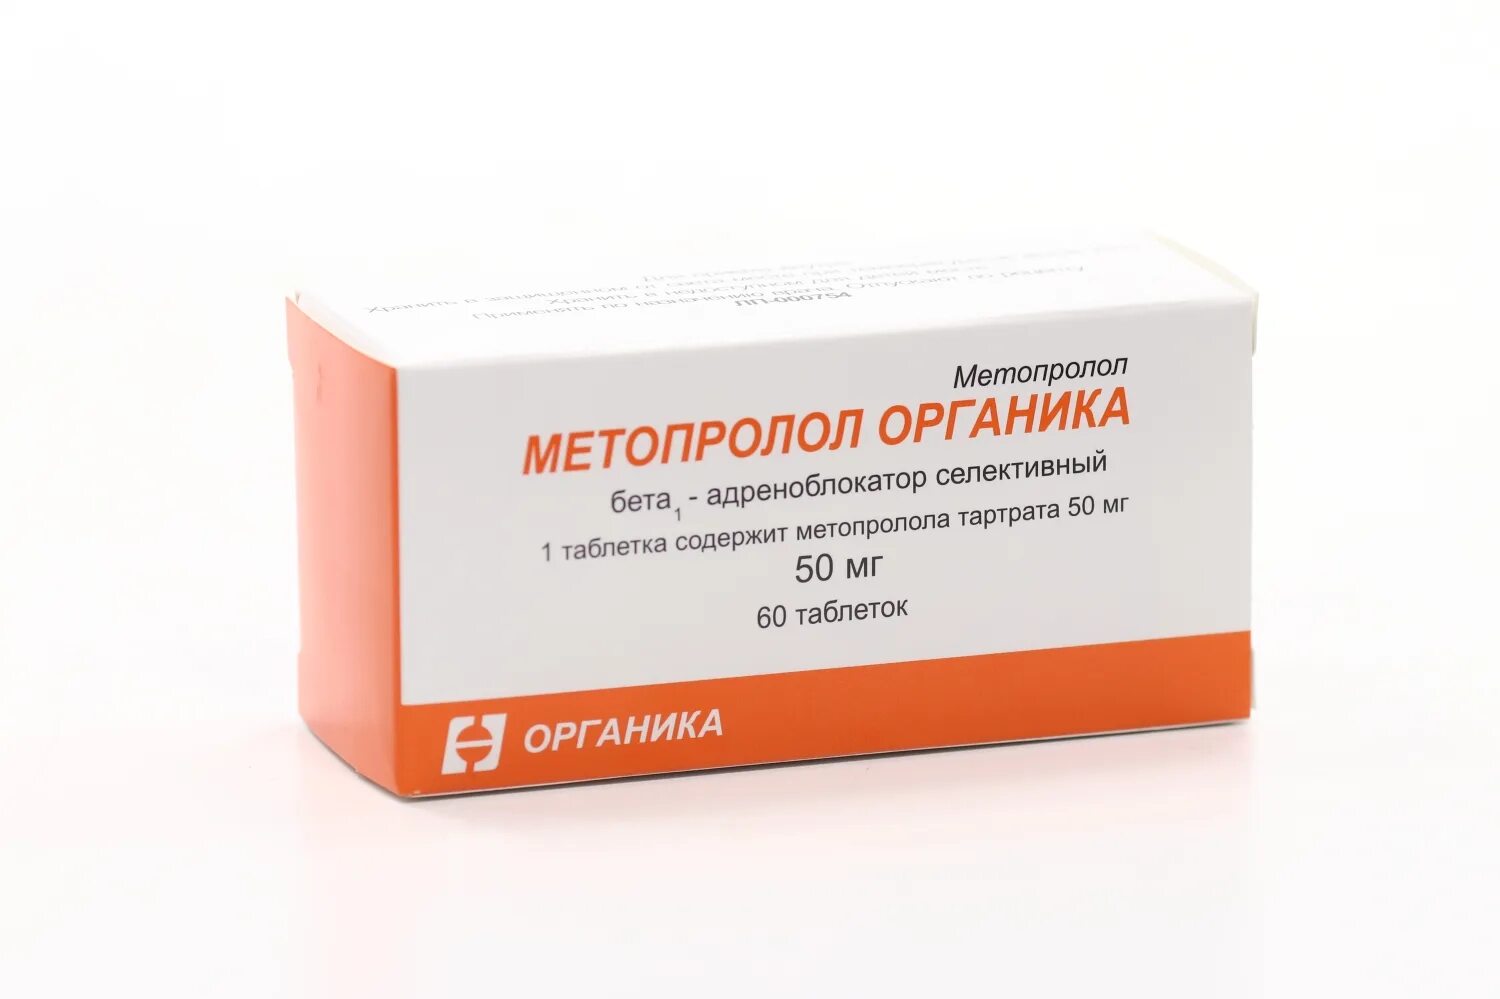 Метопролол группа препарата. Метопролол 50 мг. Метопрололом органика. Метопролол органика таблетки. Метопролол форма выпуска.